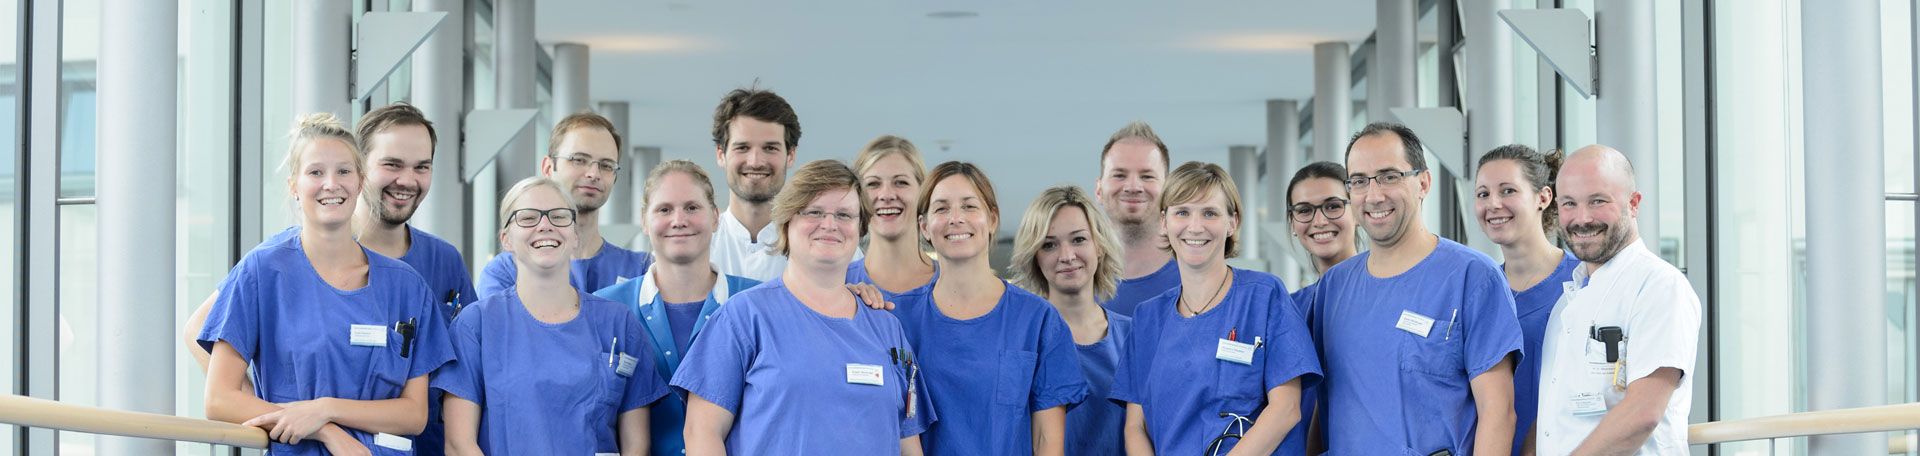 Gruppenbild: Das Team der Intensiv- und Notfallmedizin